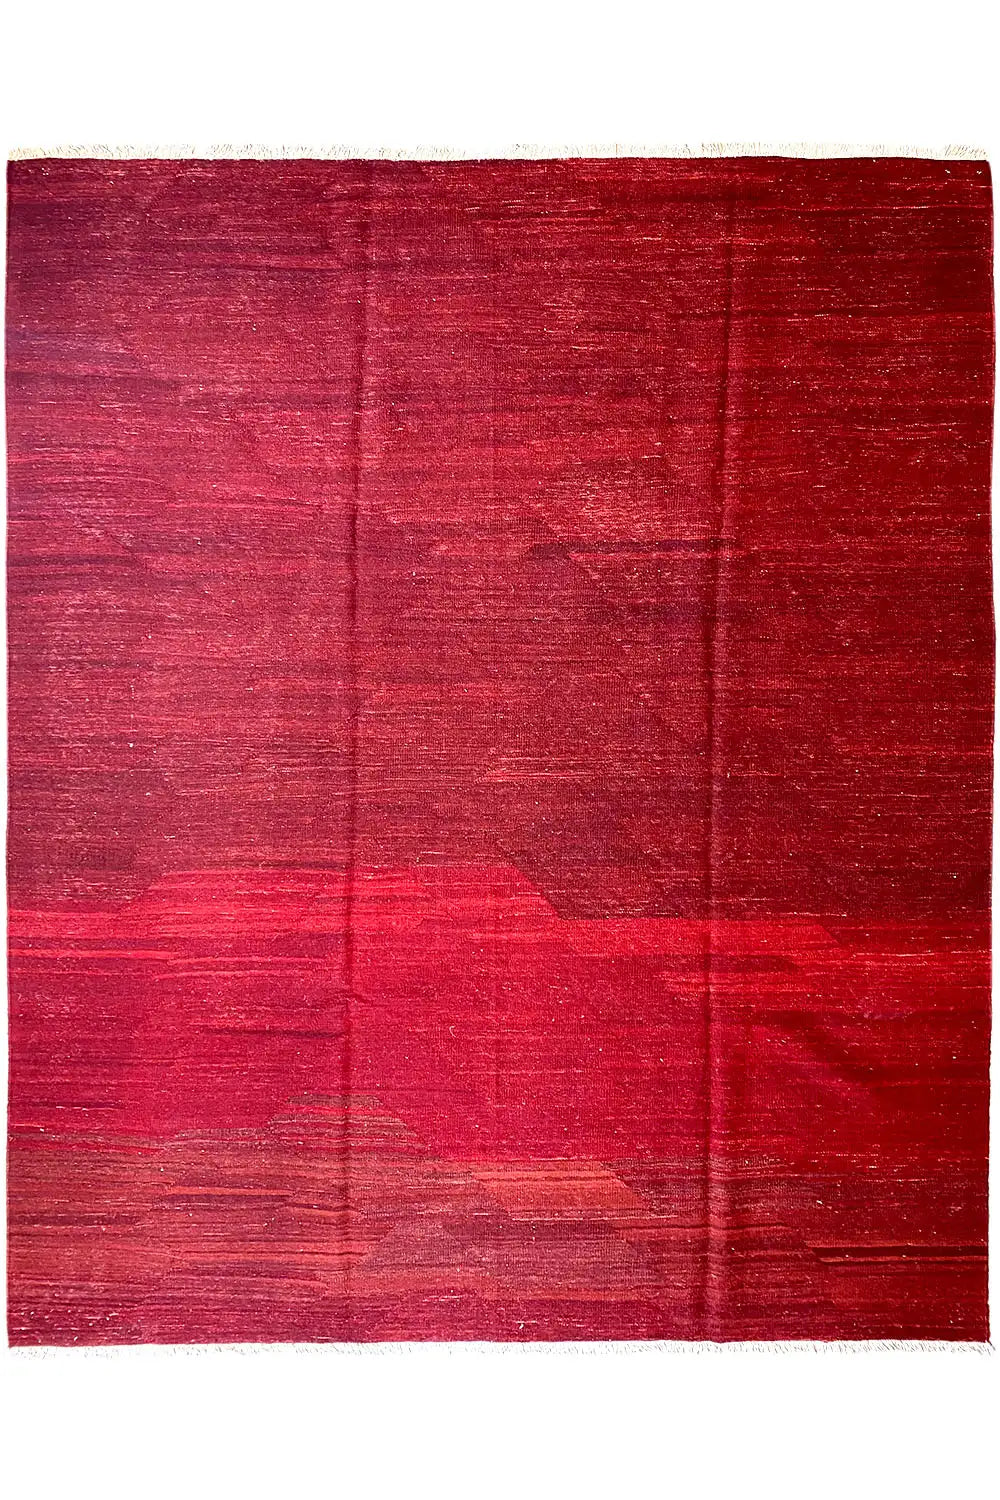 Kilim Qashqai  - 201998 (301x219cm) - German Carpet Shop